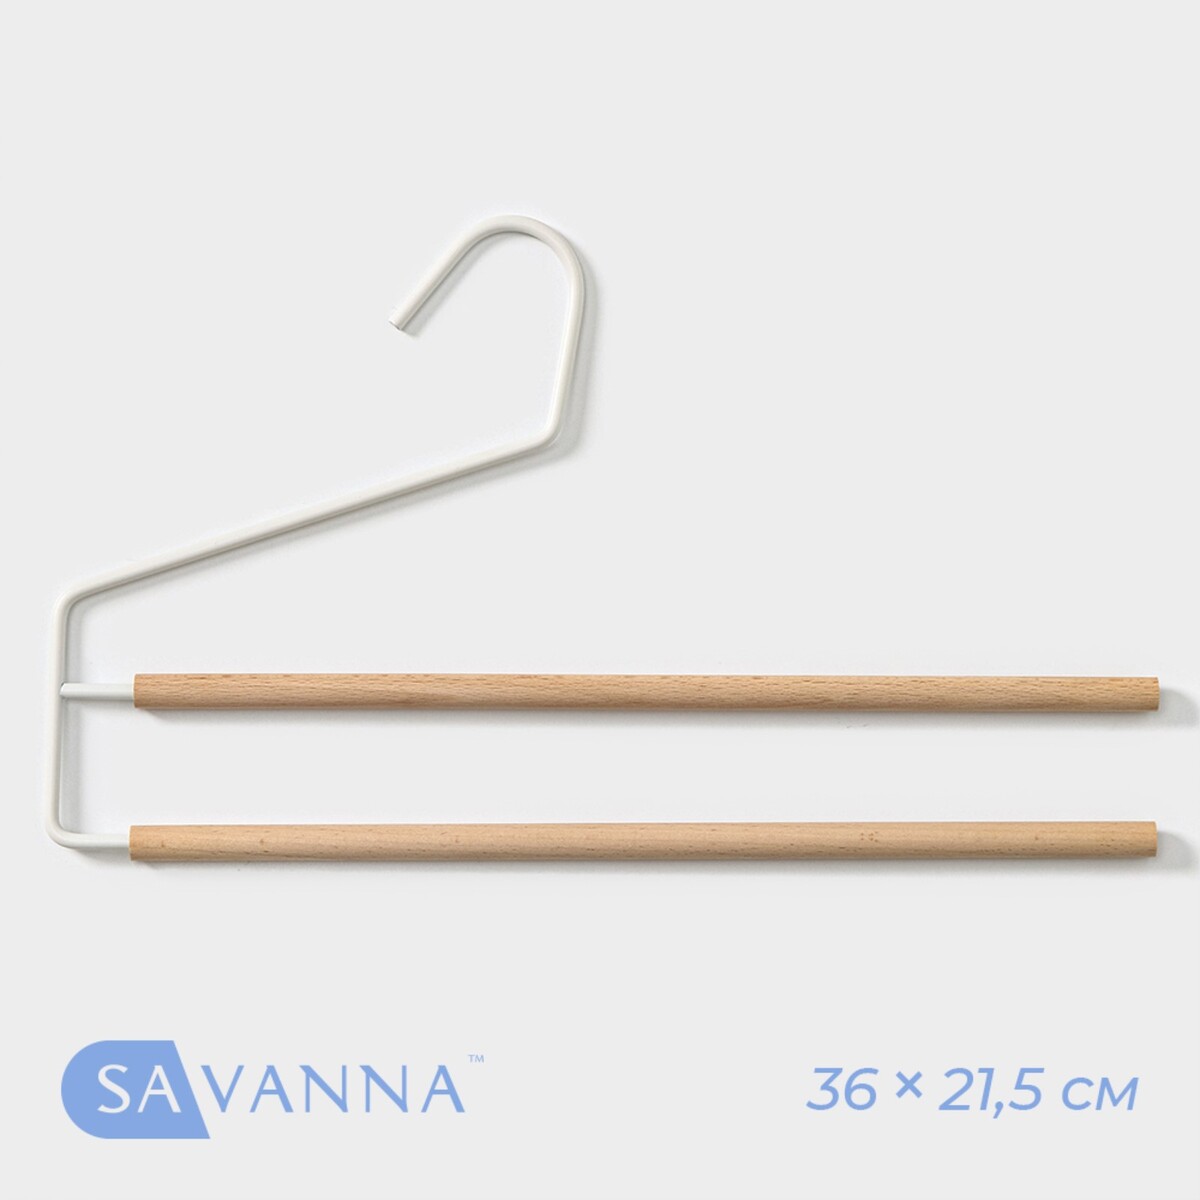 Плечики - вешалки многогуровневые для брюк и юбок savanna wood, 36×21,5×1,1 см, цвет белый плечики вешалка для брюк и юбок savanna wood 1 перекладина 37×22×1 5 см розовый